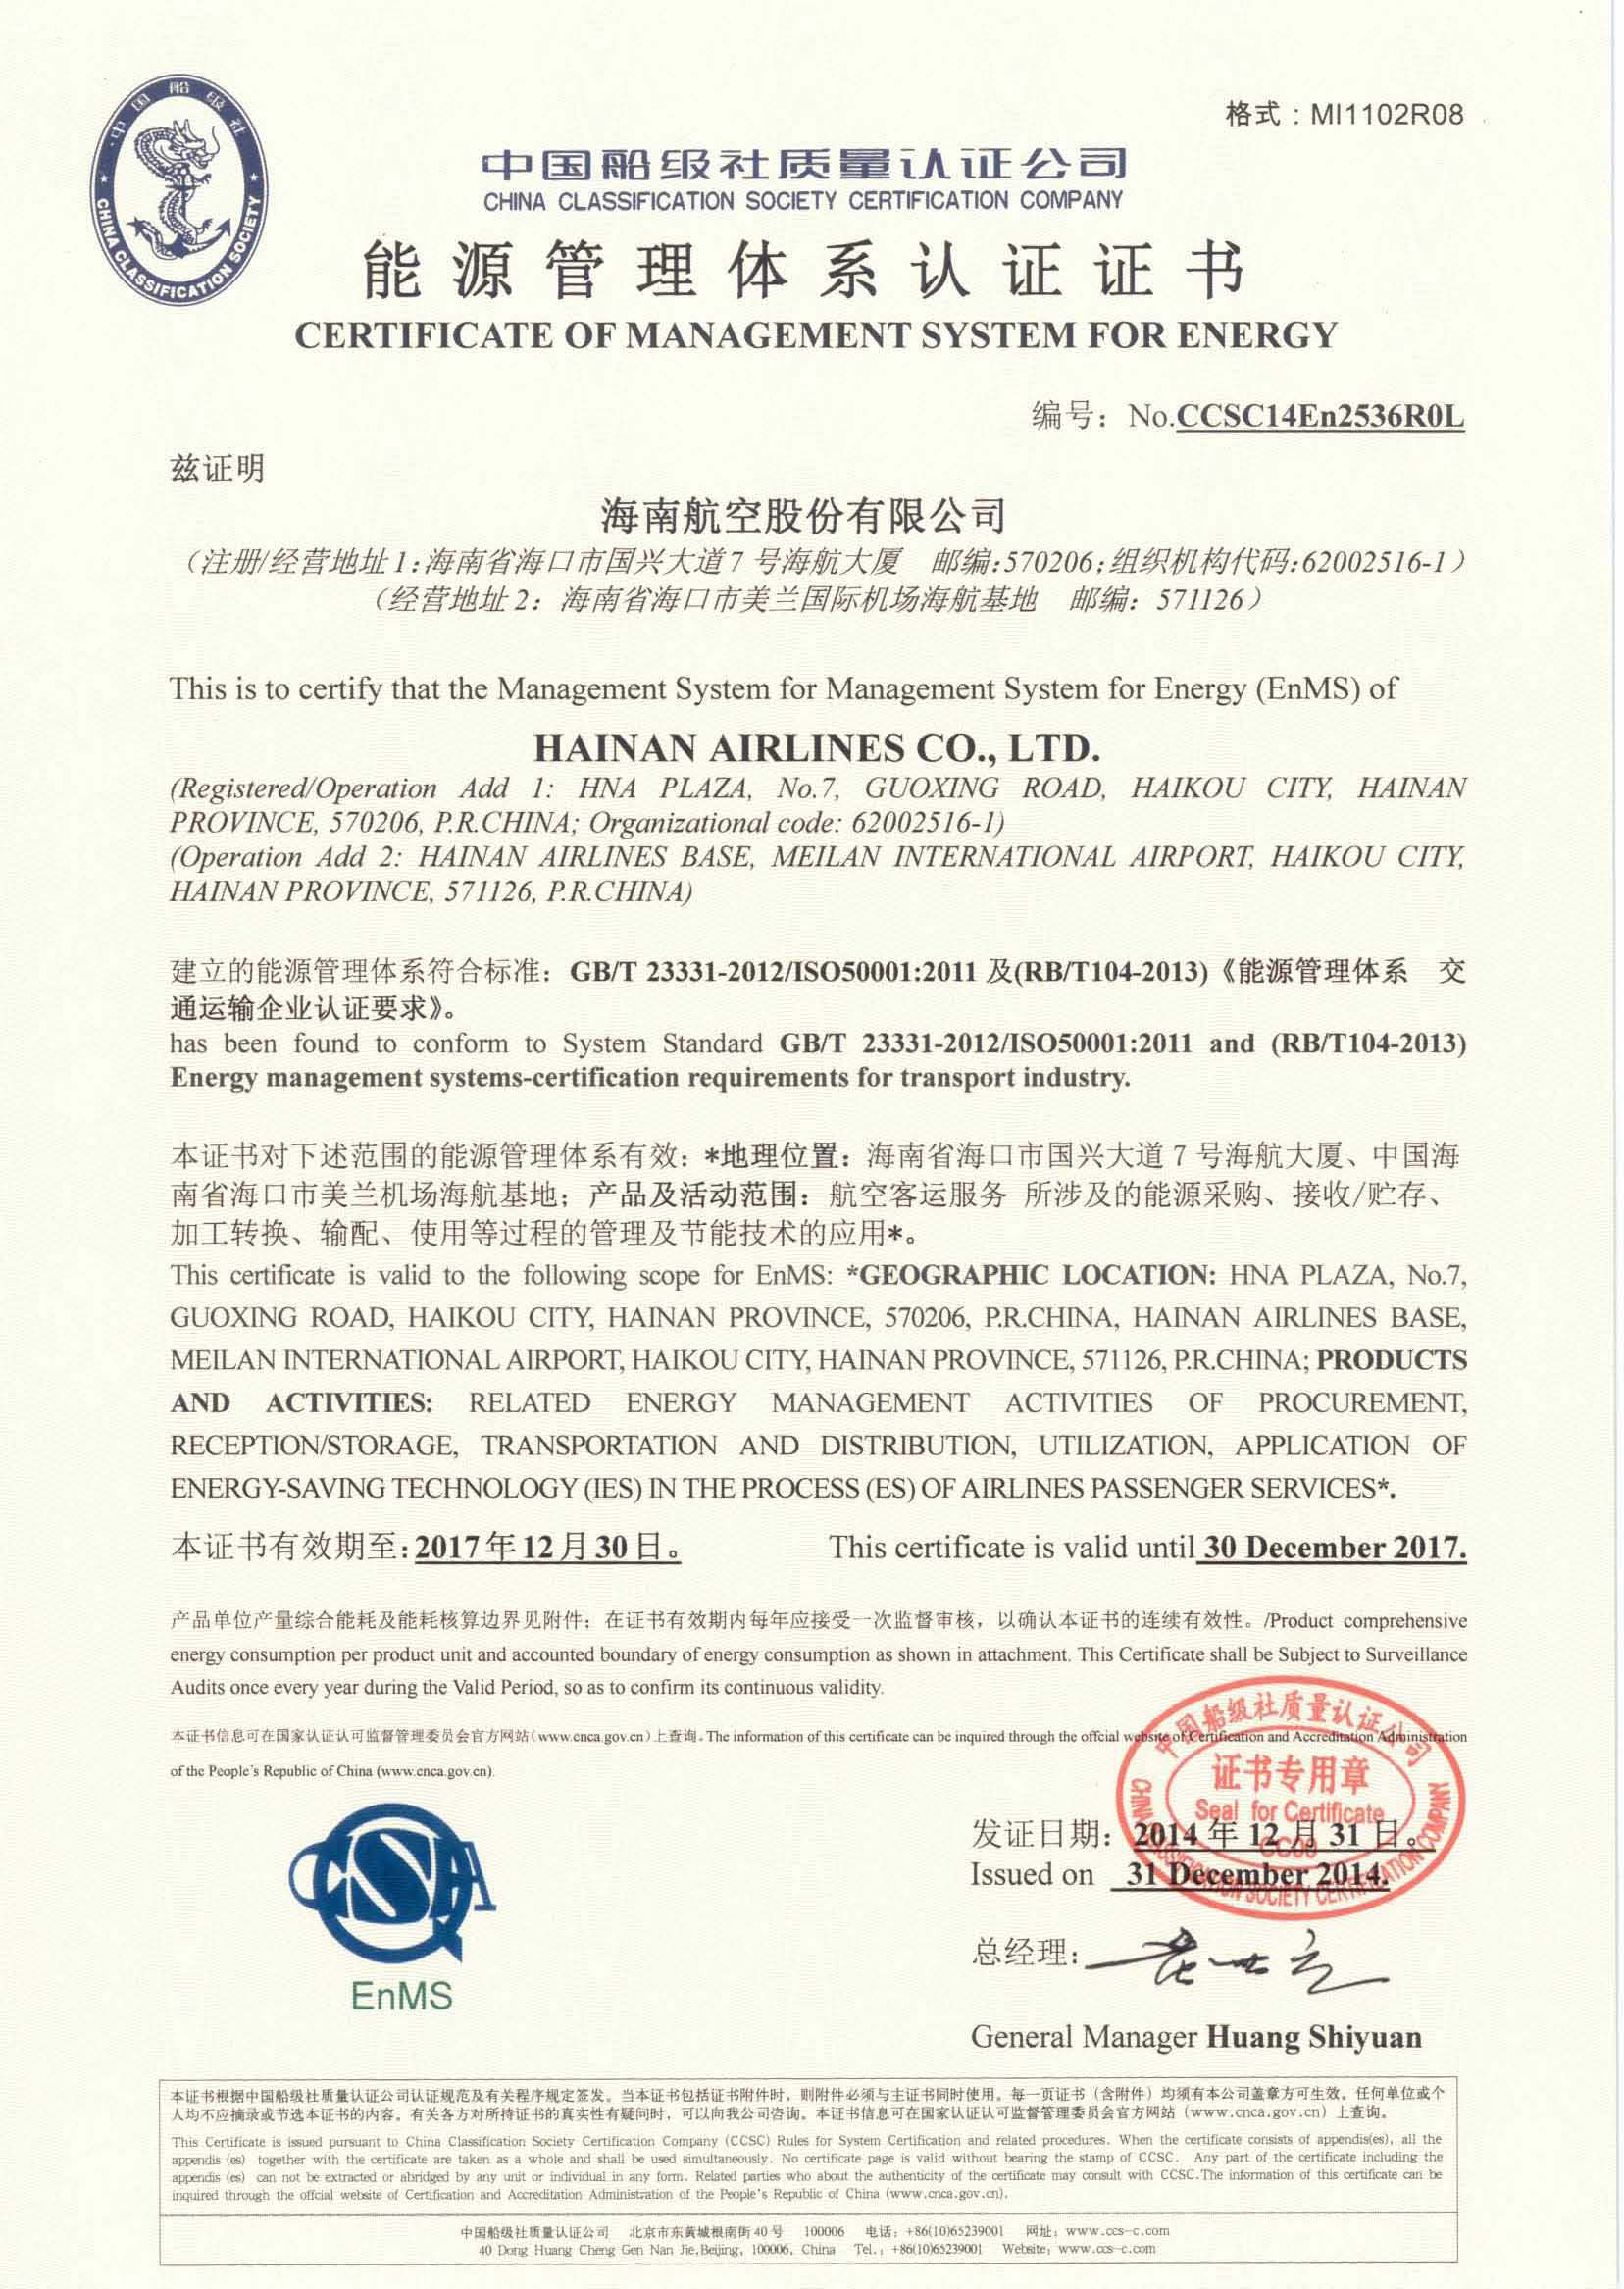 2014年12月31日，公司为海南航空控股股份有限公司颁发了第一张交通运输民航领域能源管理体系认证证书。.jpg